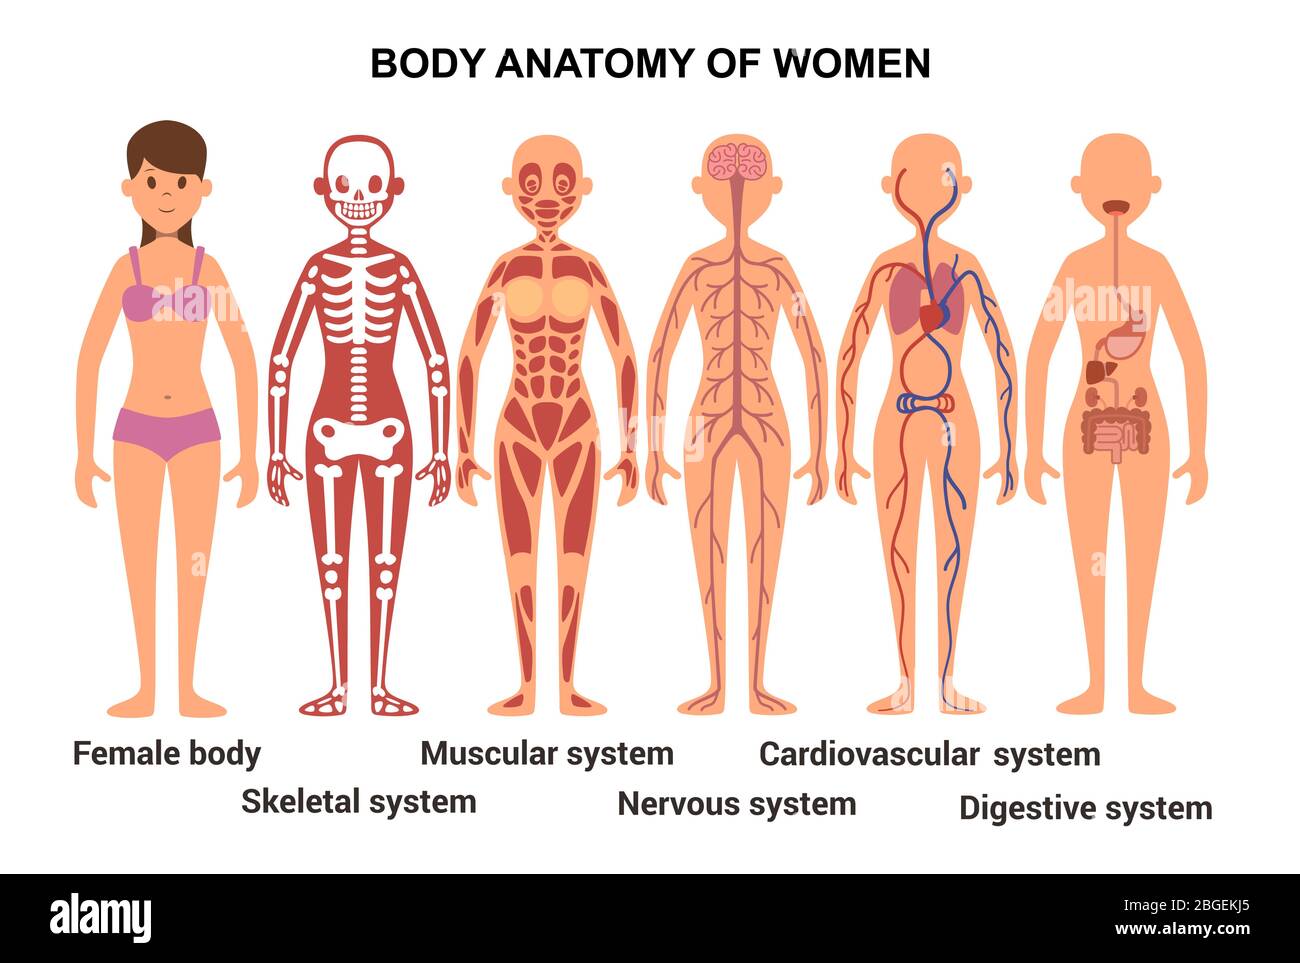 Anatomia del corpo femminile. Poster anatomico. Apparato scheletrico e muscolare, sistema nervoso e circolatorio, apparato digerente umano Illustrazione Vettoriale